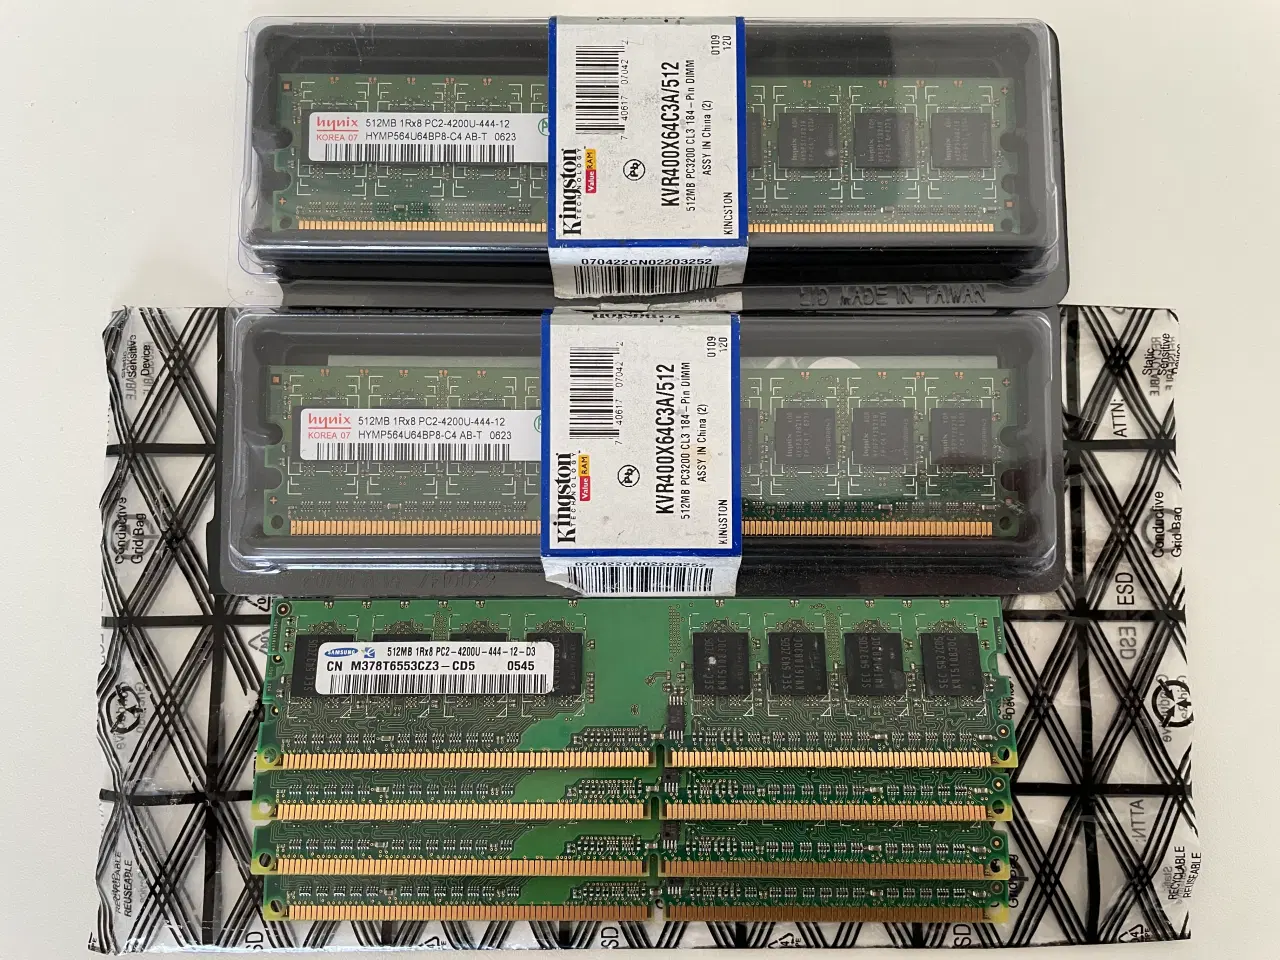 Billede 1 - 3 Gb. DDR3 og DDR2 RAM blokke, 3 GB., DDR3 SDRAM